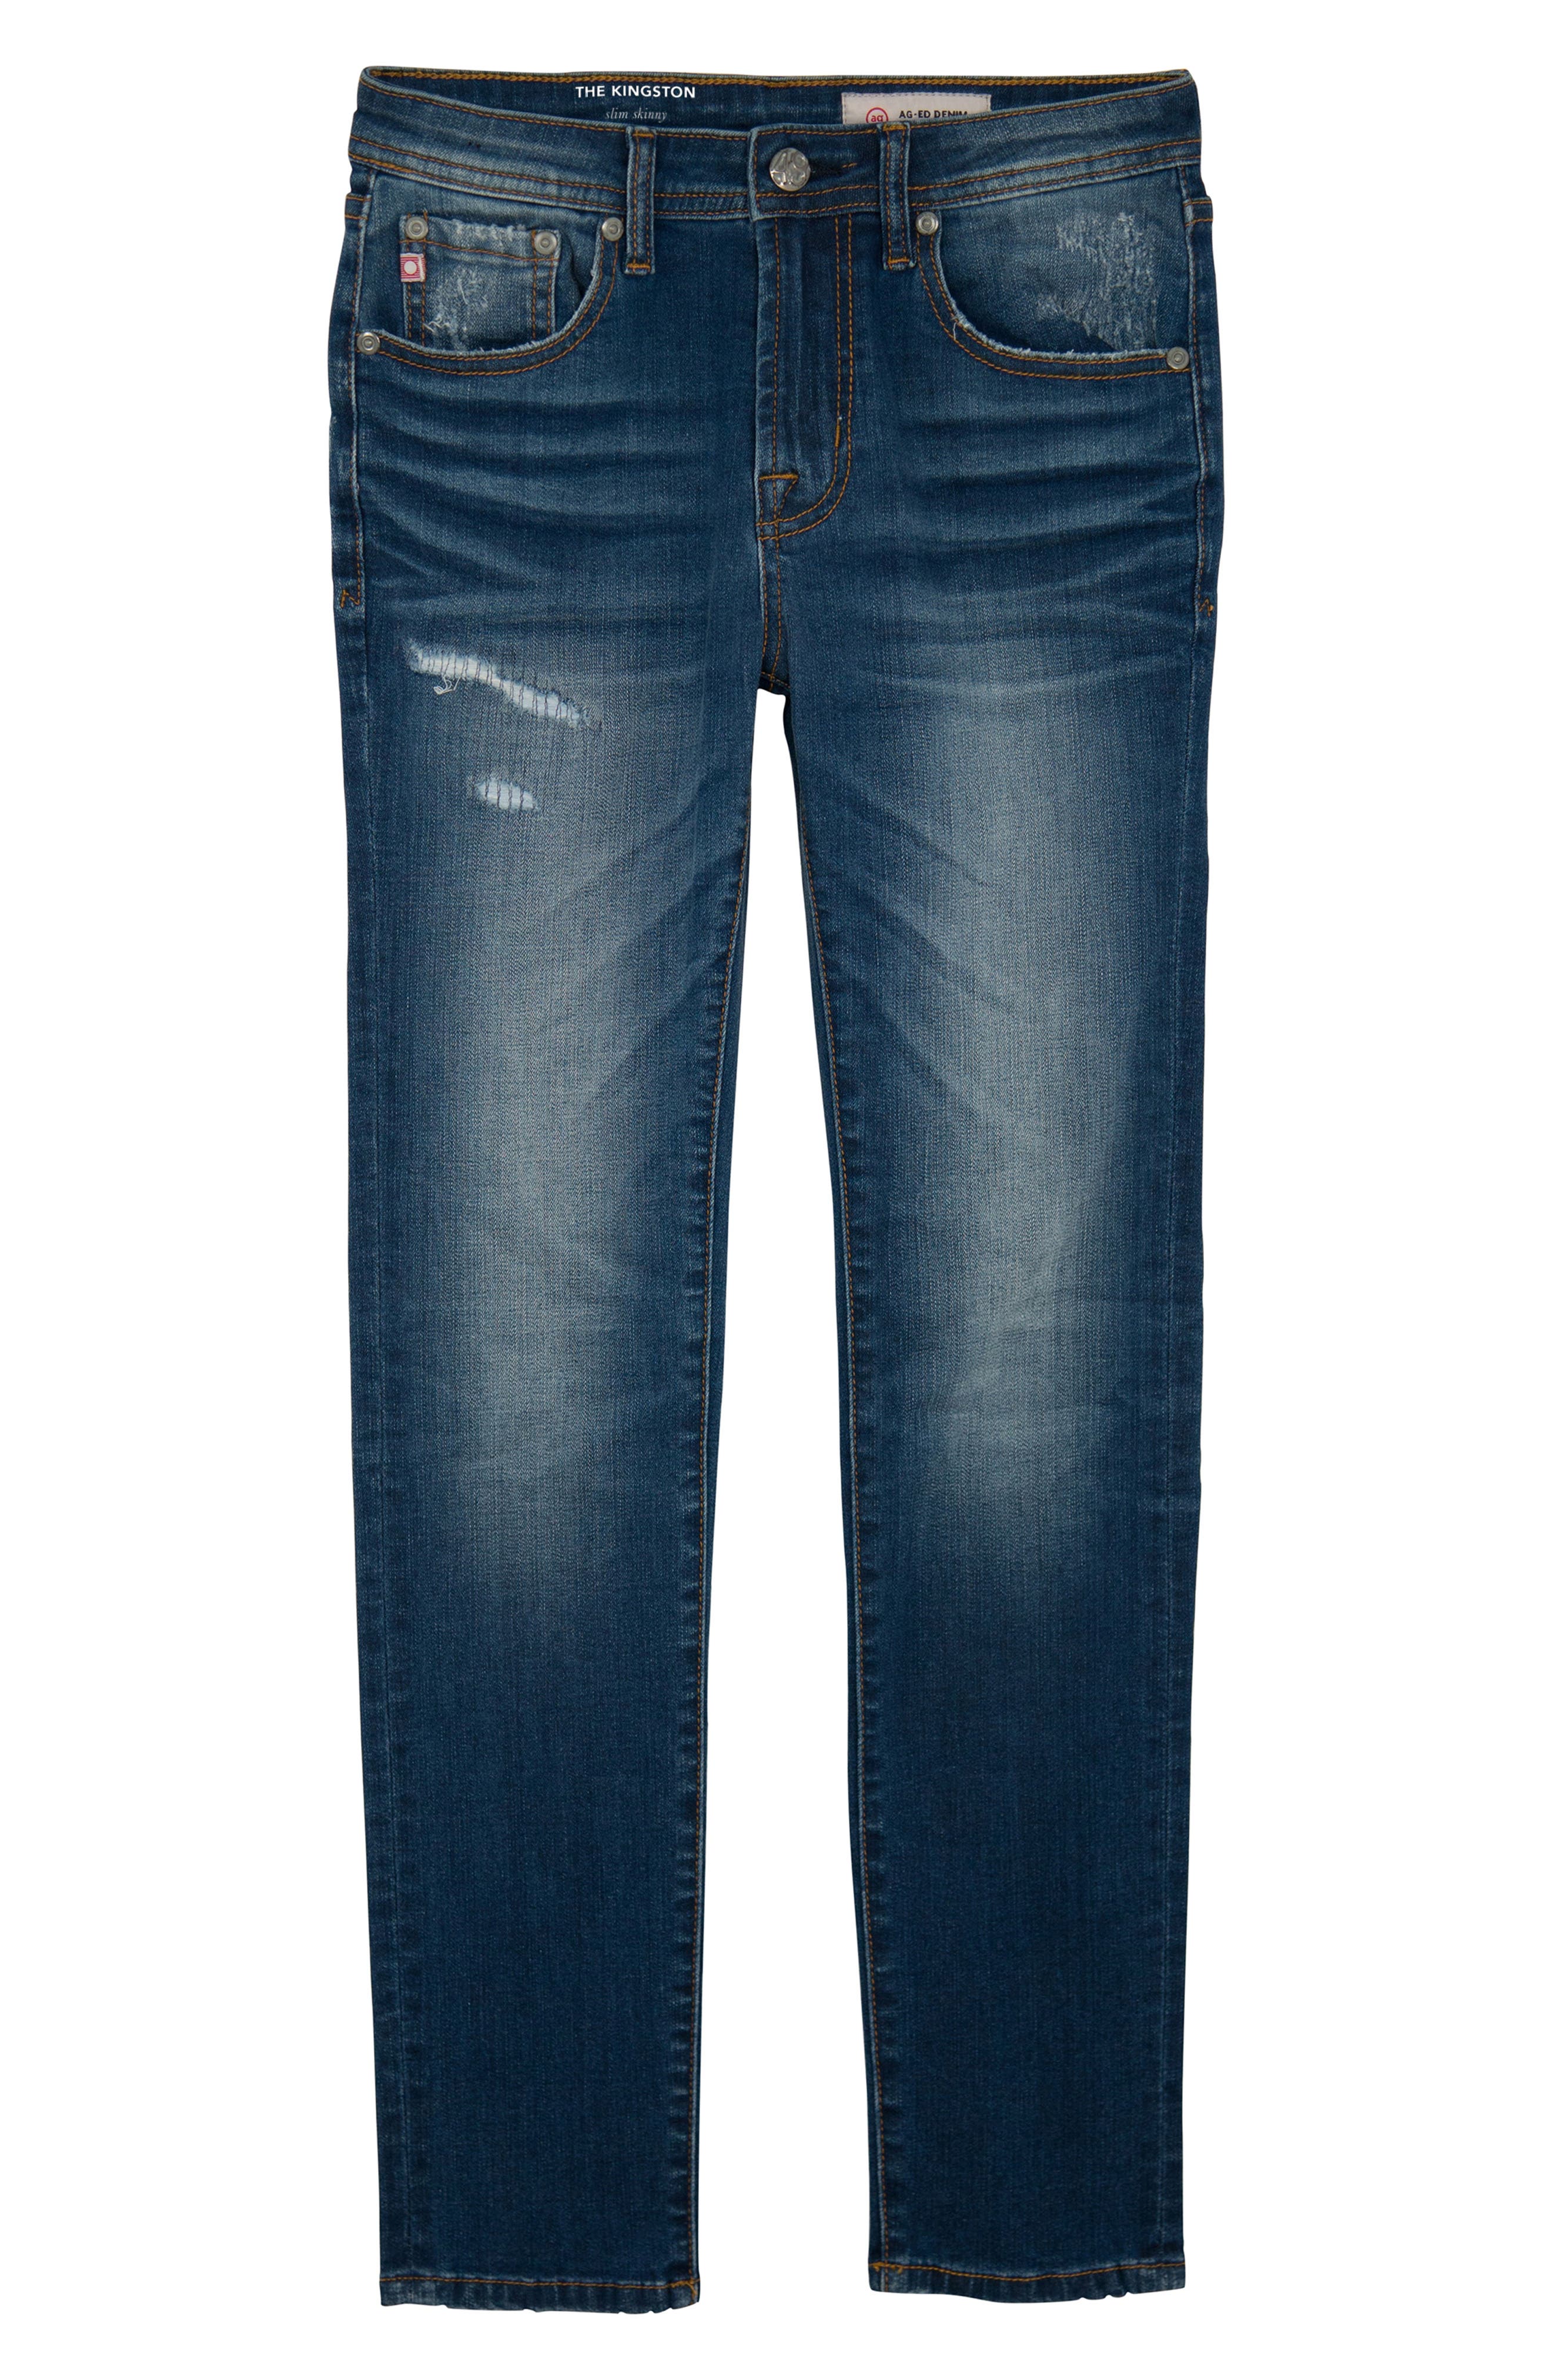 adrian goldschmidt jeans